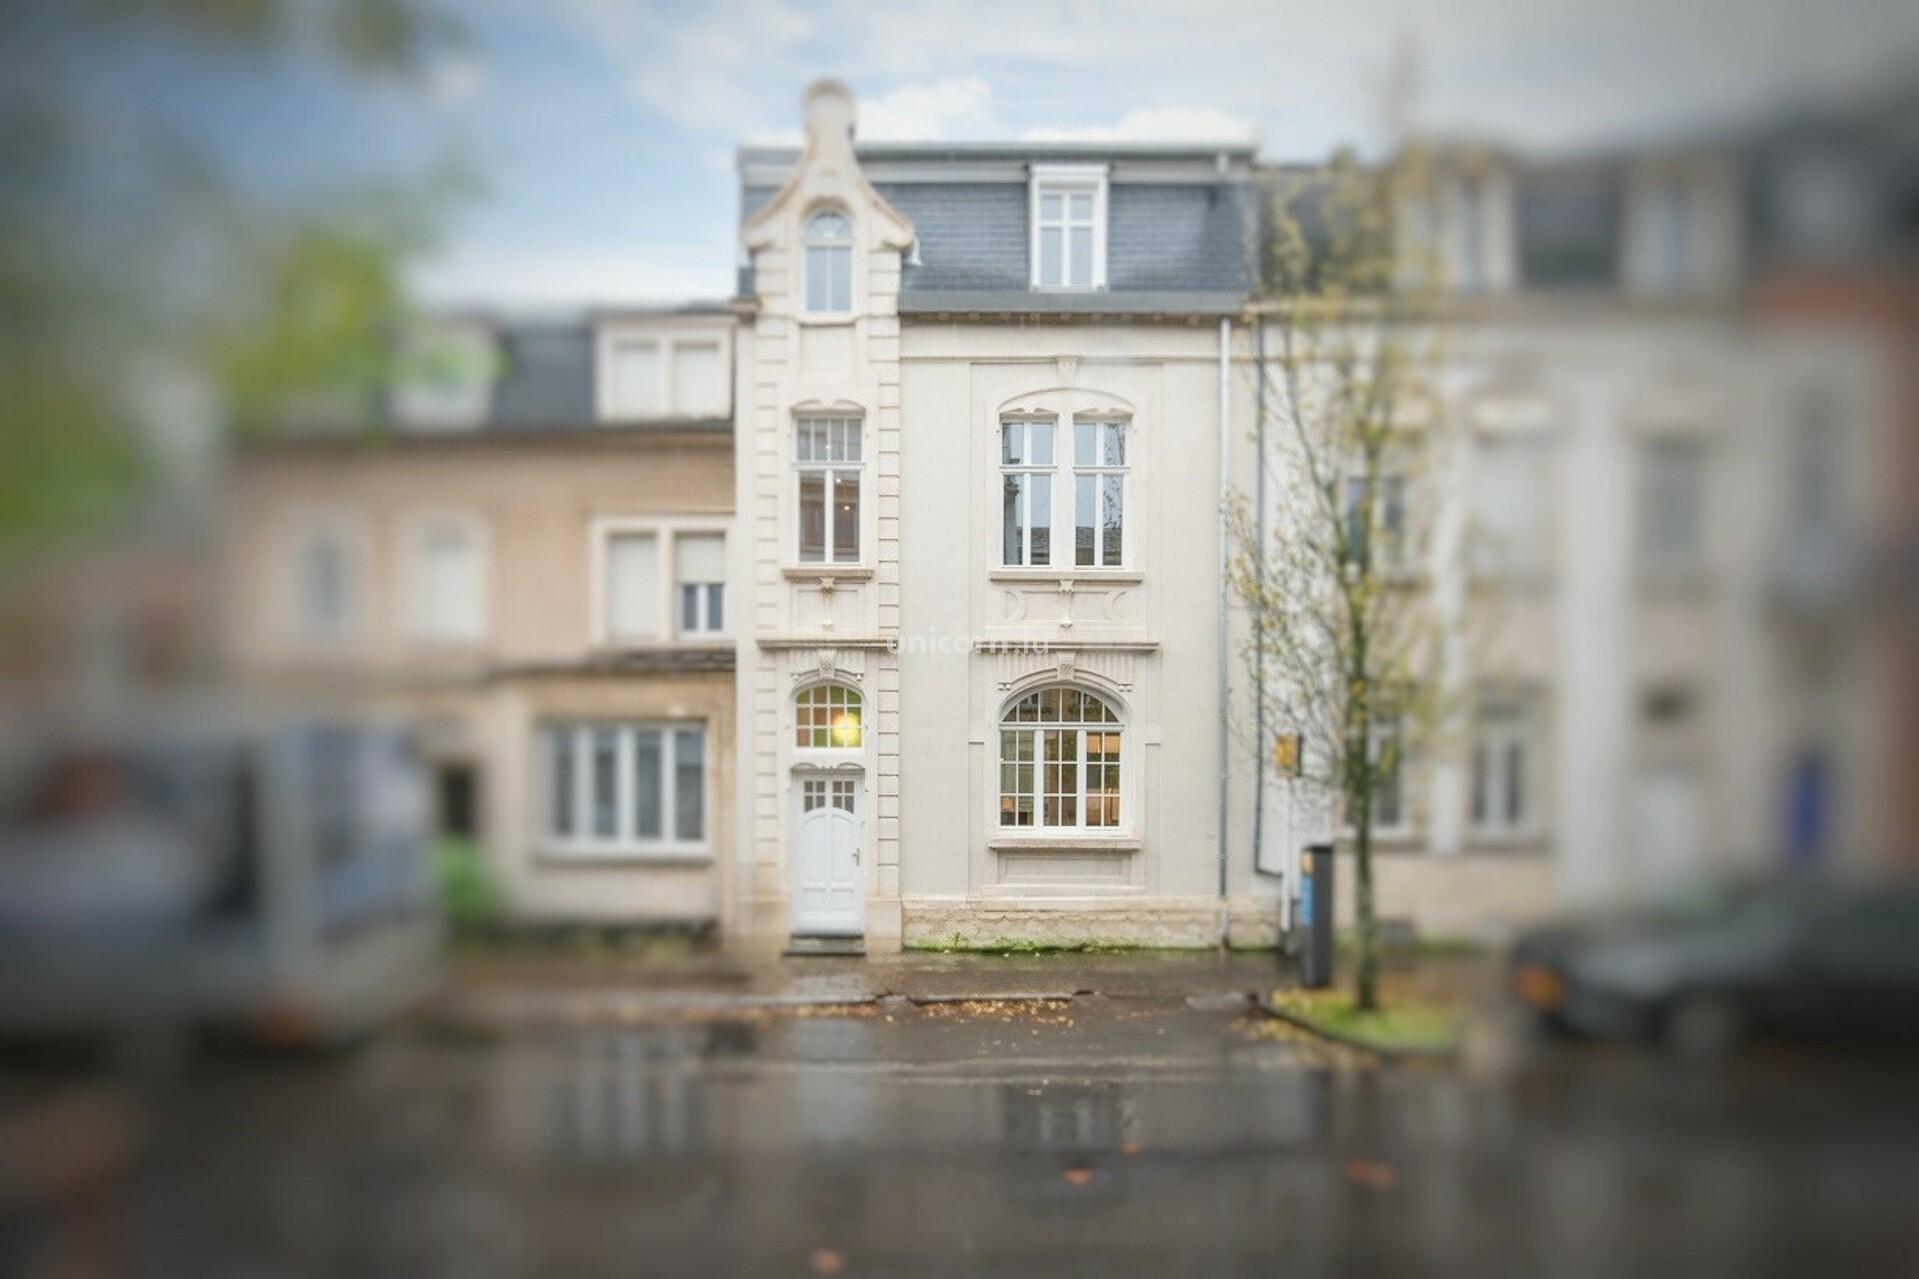 Maison en vente à Luxembourg-Limpertsberg  - 200m²